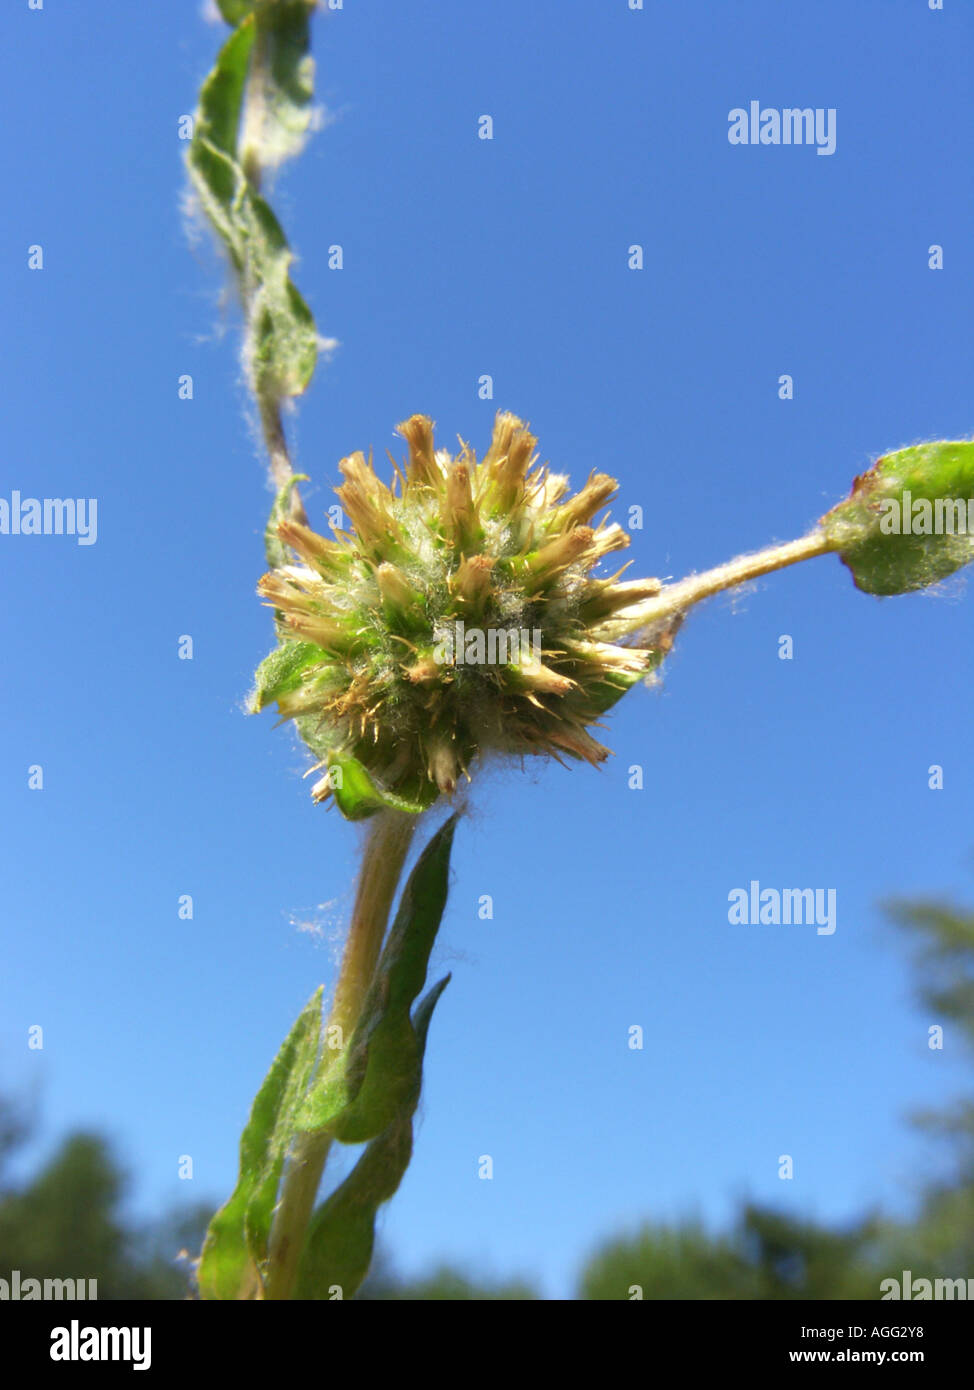 jersey cudweed (Gnaphalium luteoalbum, Pseudognaphalium luteoalbum), inflorescence (capitulum) against blue sky Stock Photo